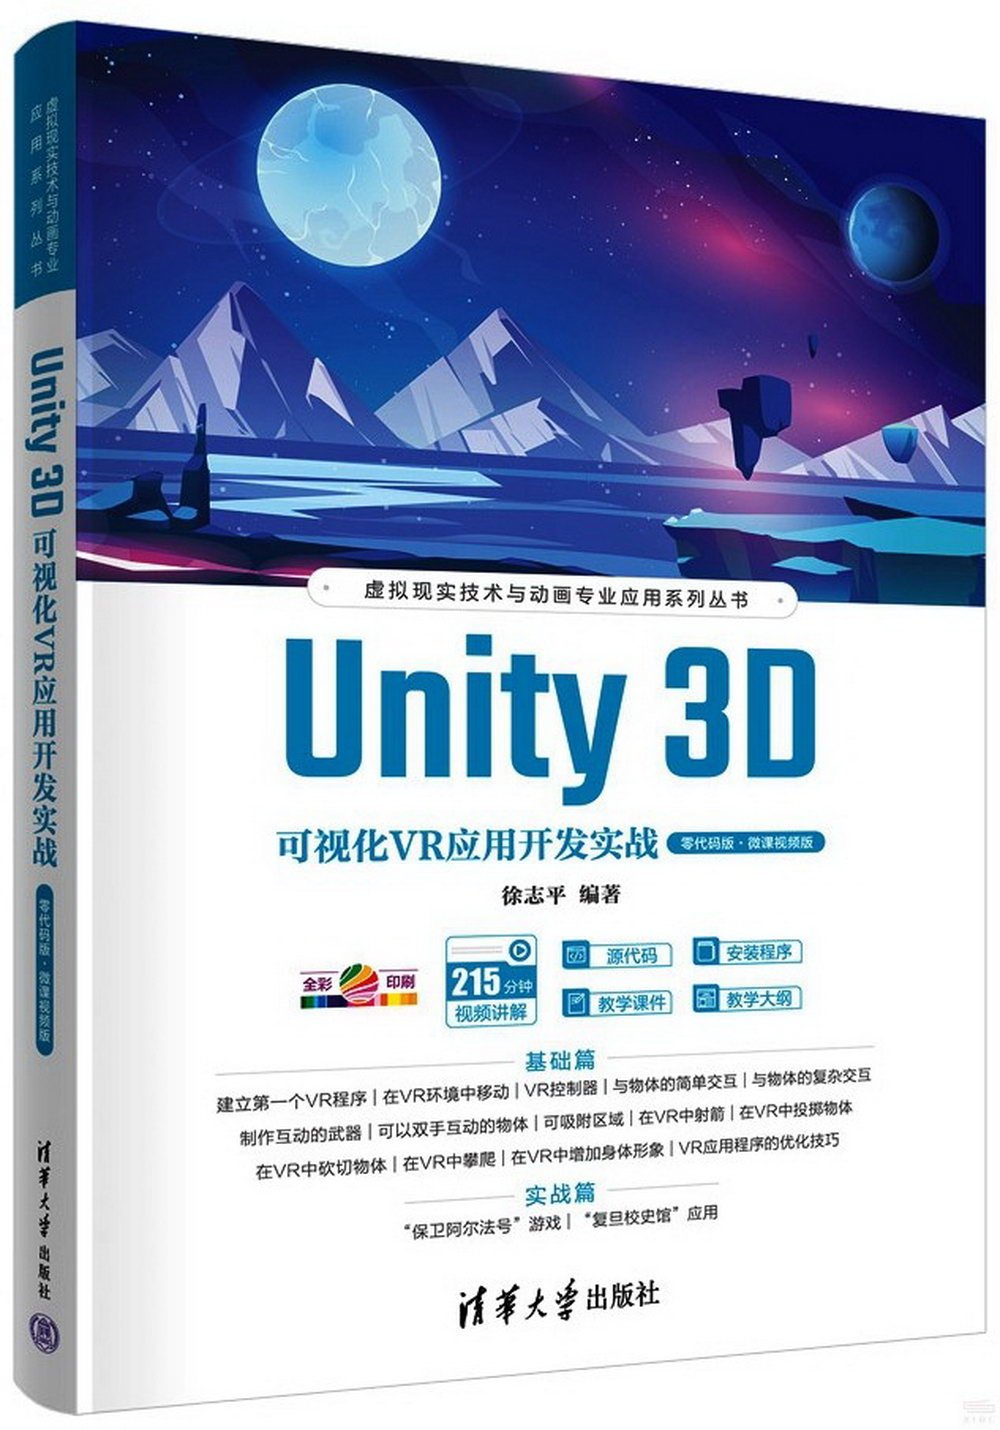 Unity 3D可視化VR應用開發實戰(零代碼版·微課視頻版)